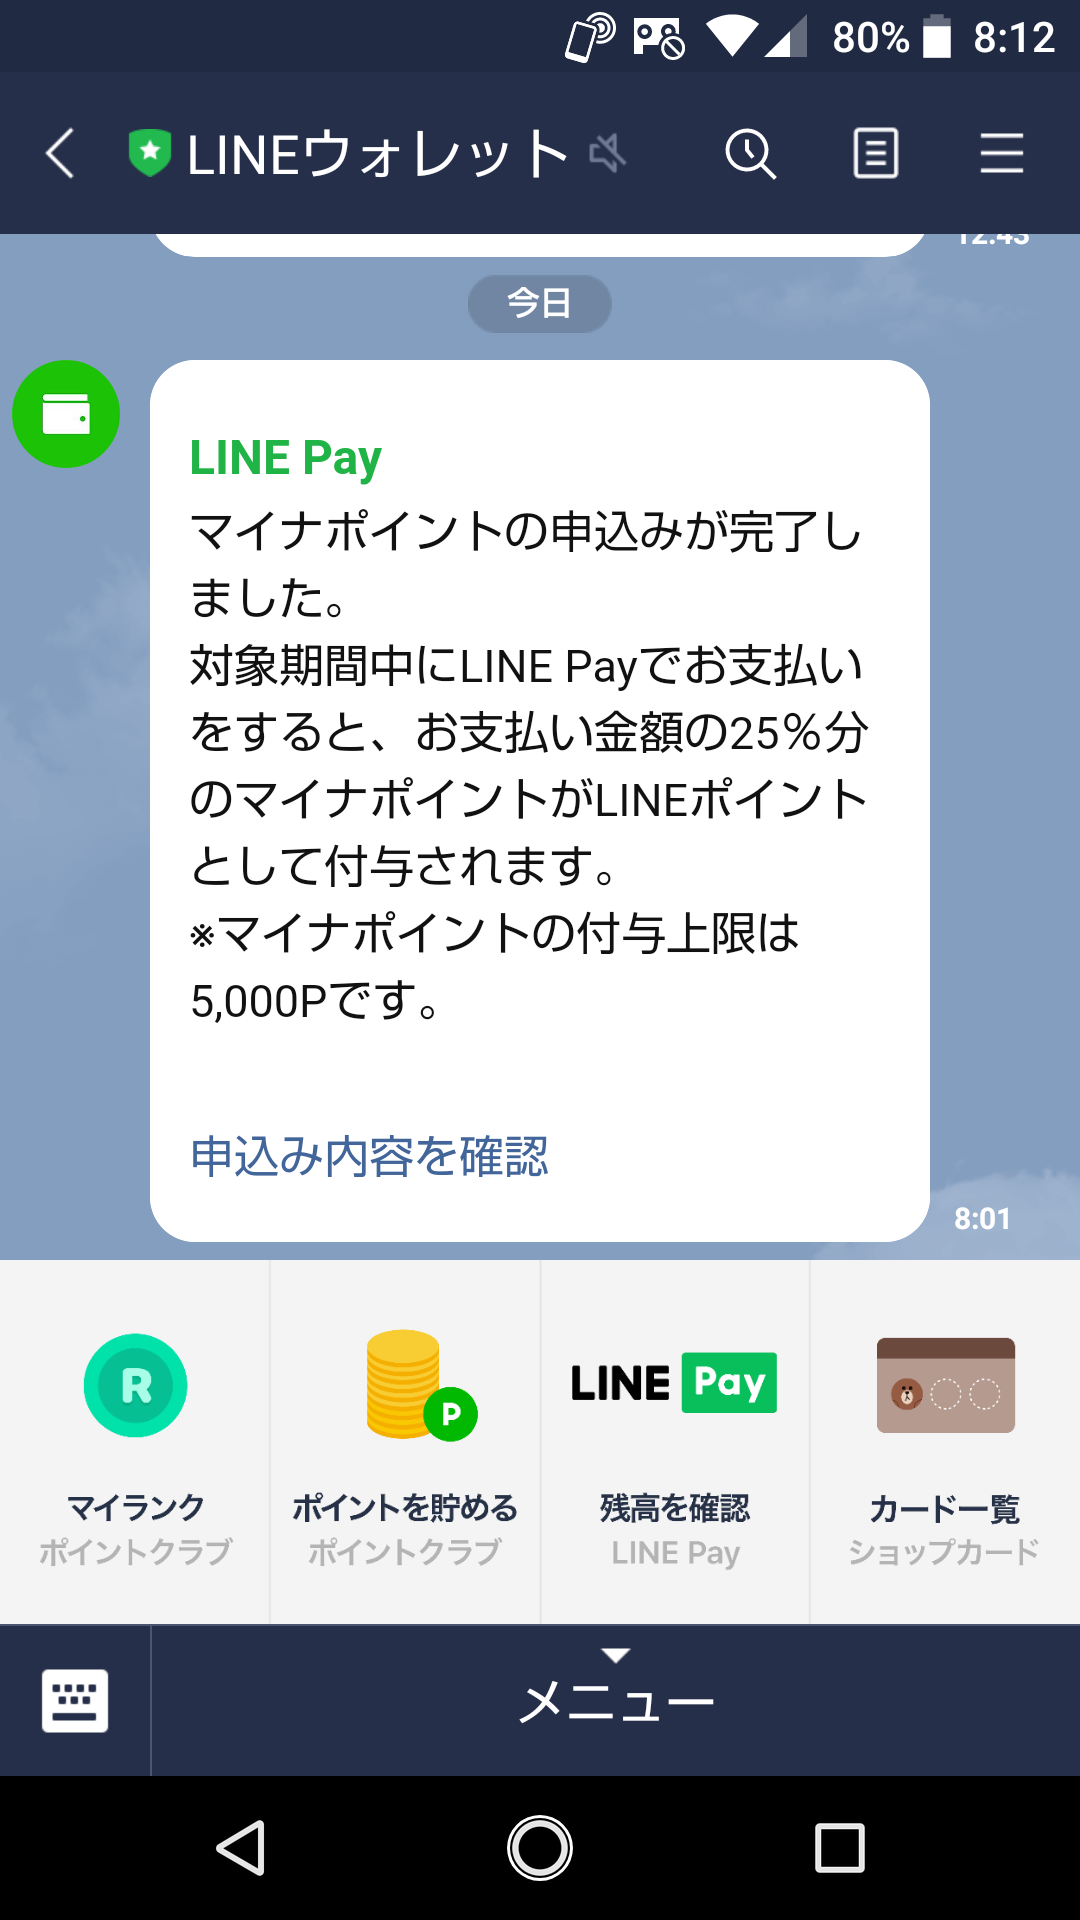 Pay マイナ ポイント line 対象となるキャッシュレス決済サービス詳細